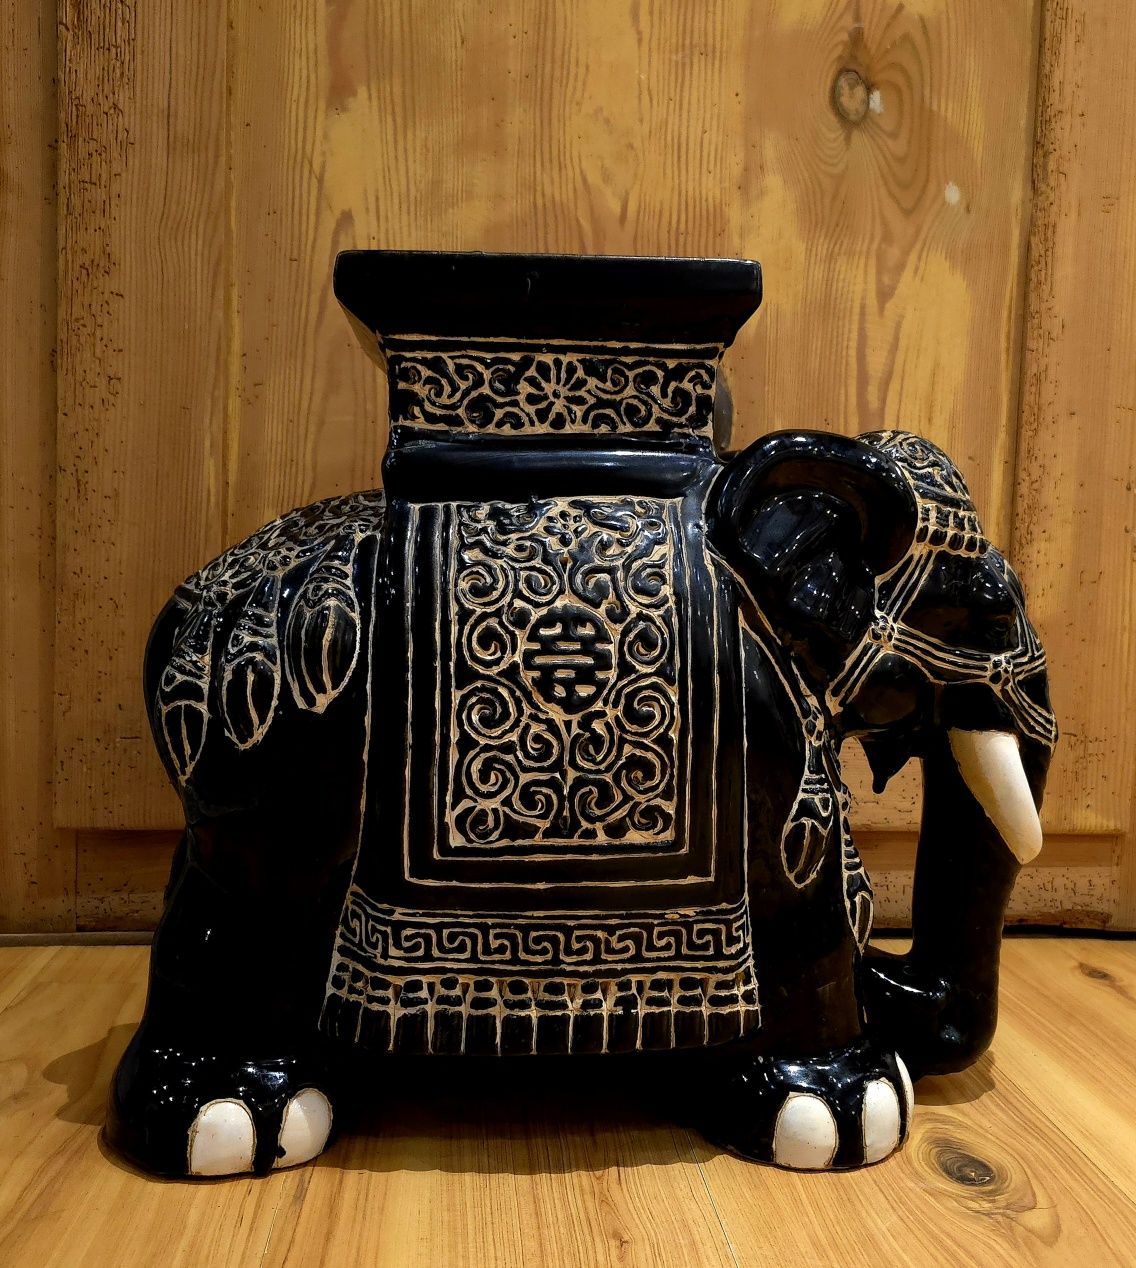 Ceramiczny słoń kwietnik postument